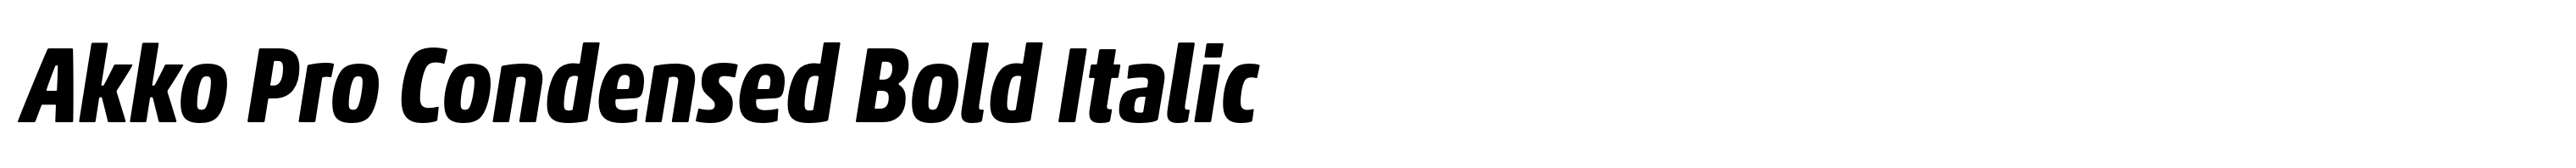 Akko Pro Condensed Bold Italic